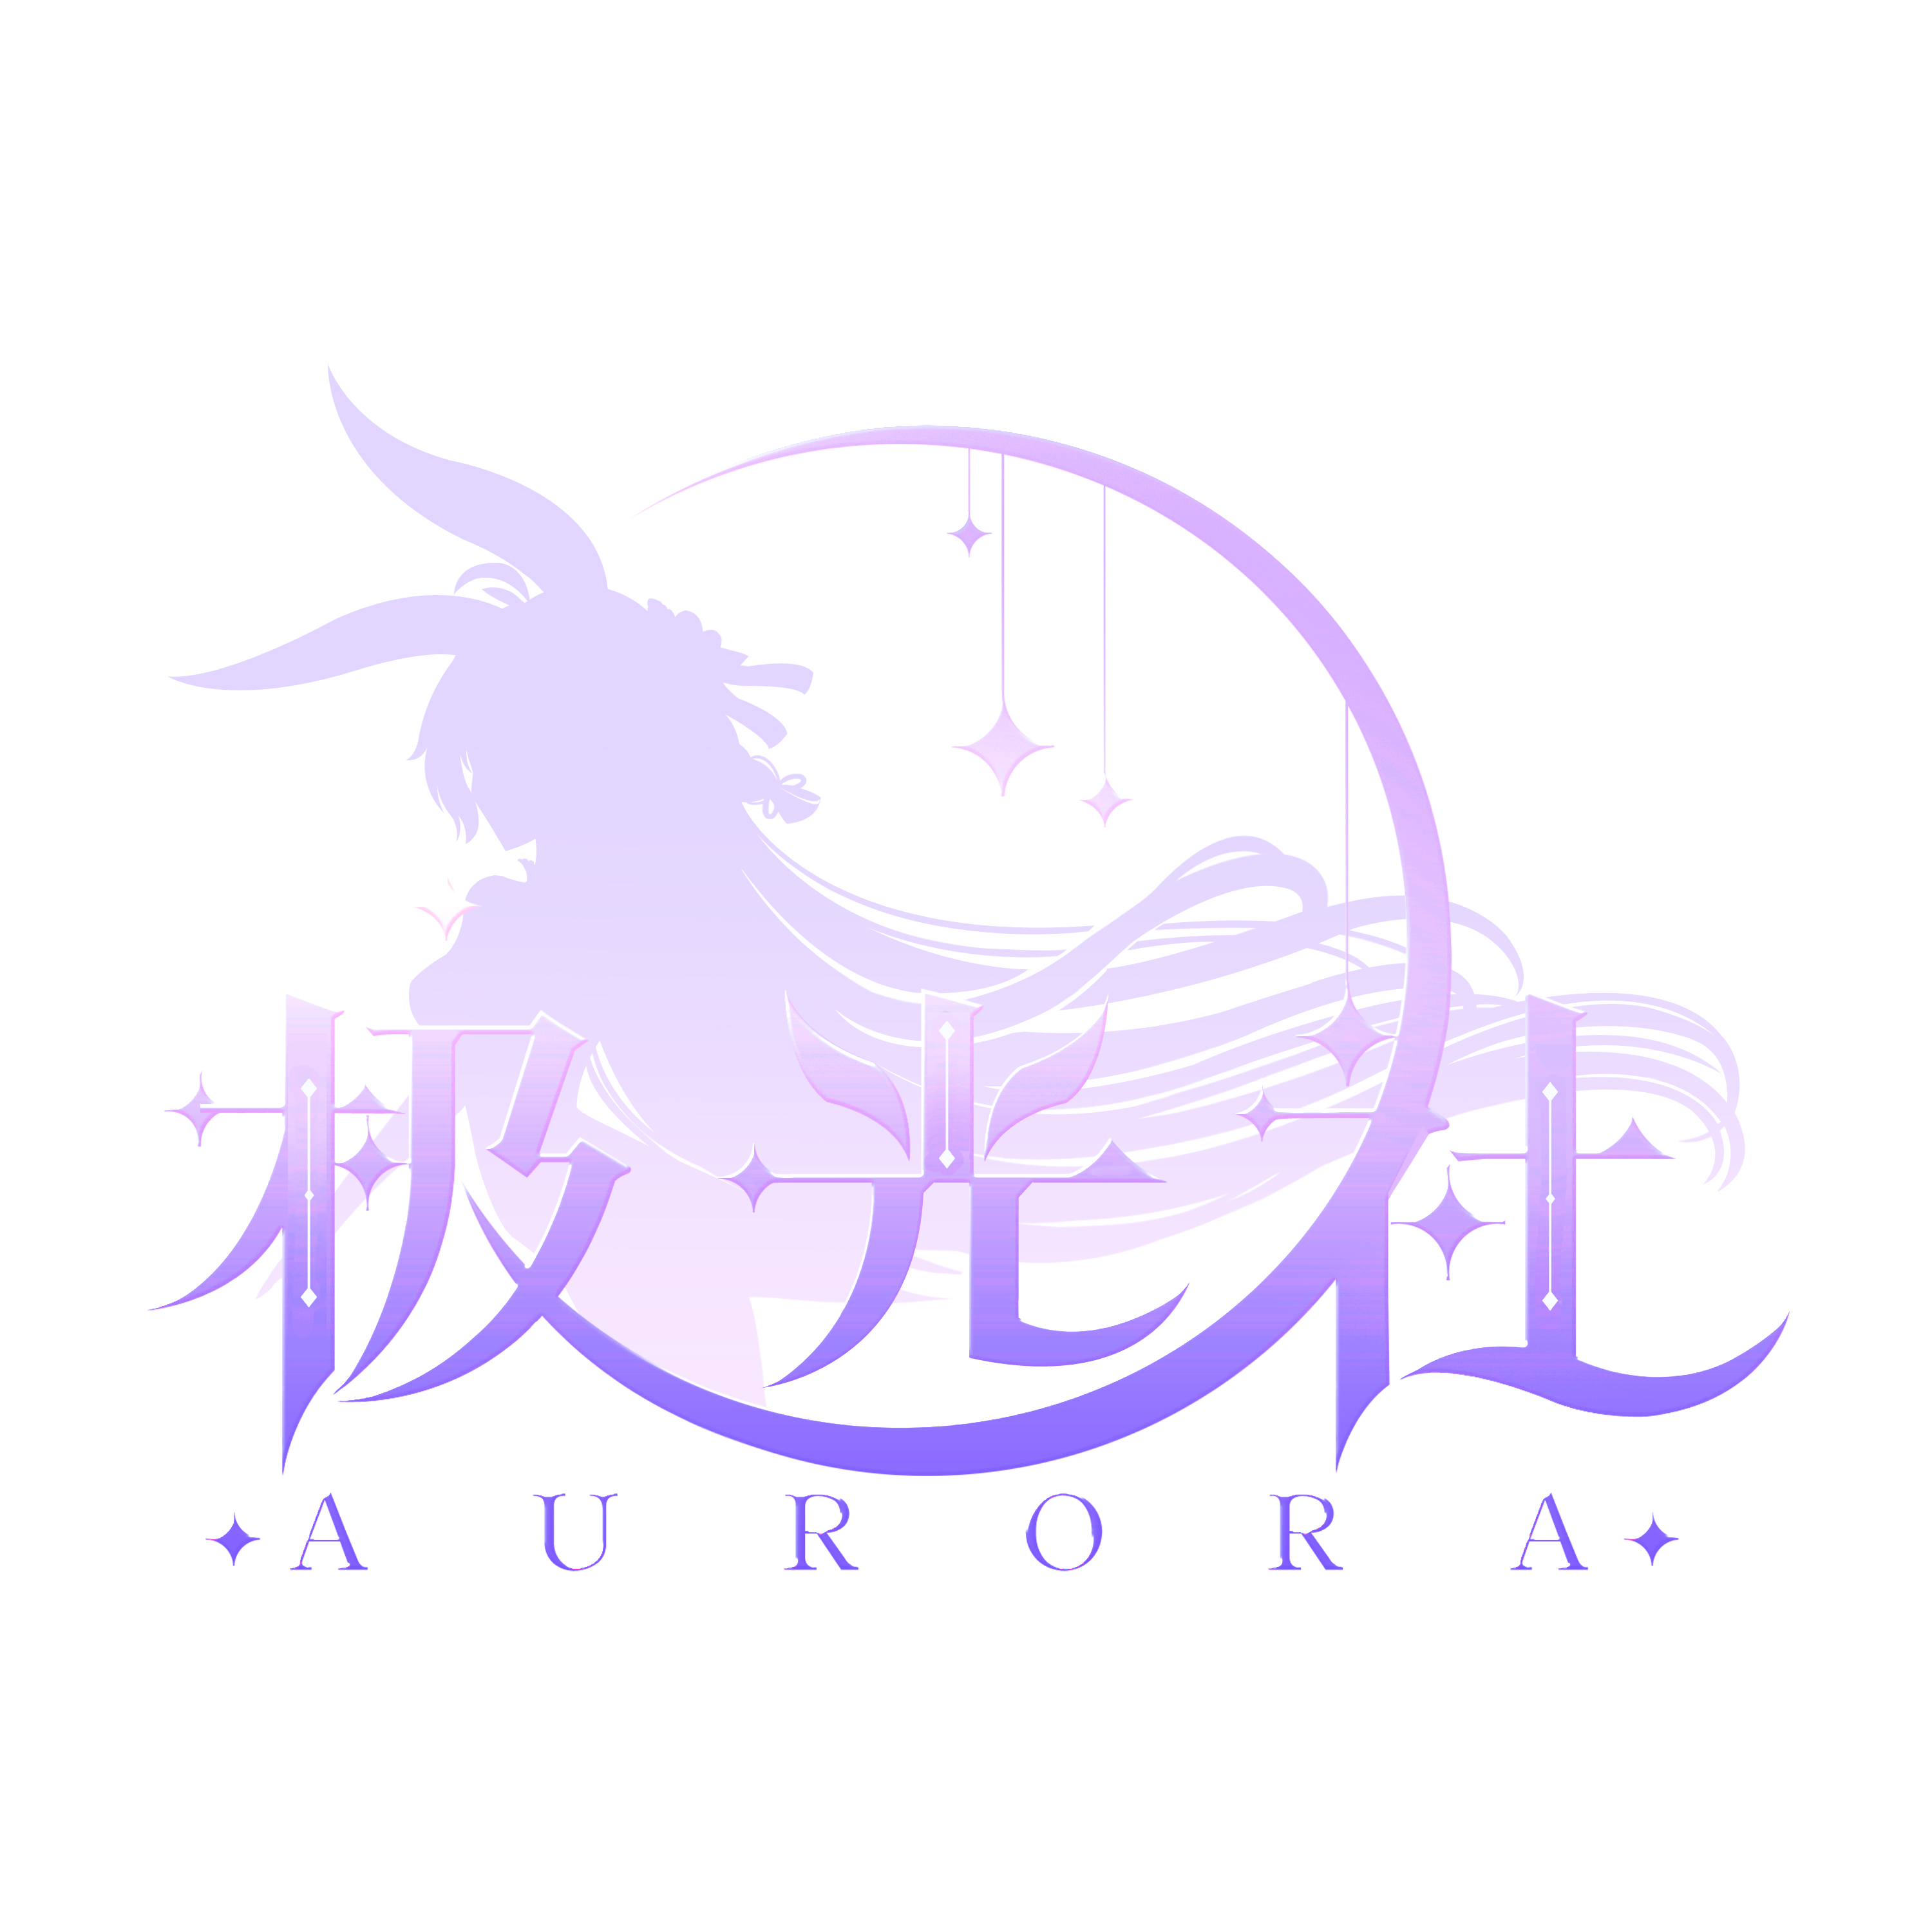 极光社logo紫.jpg